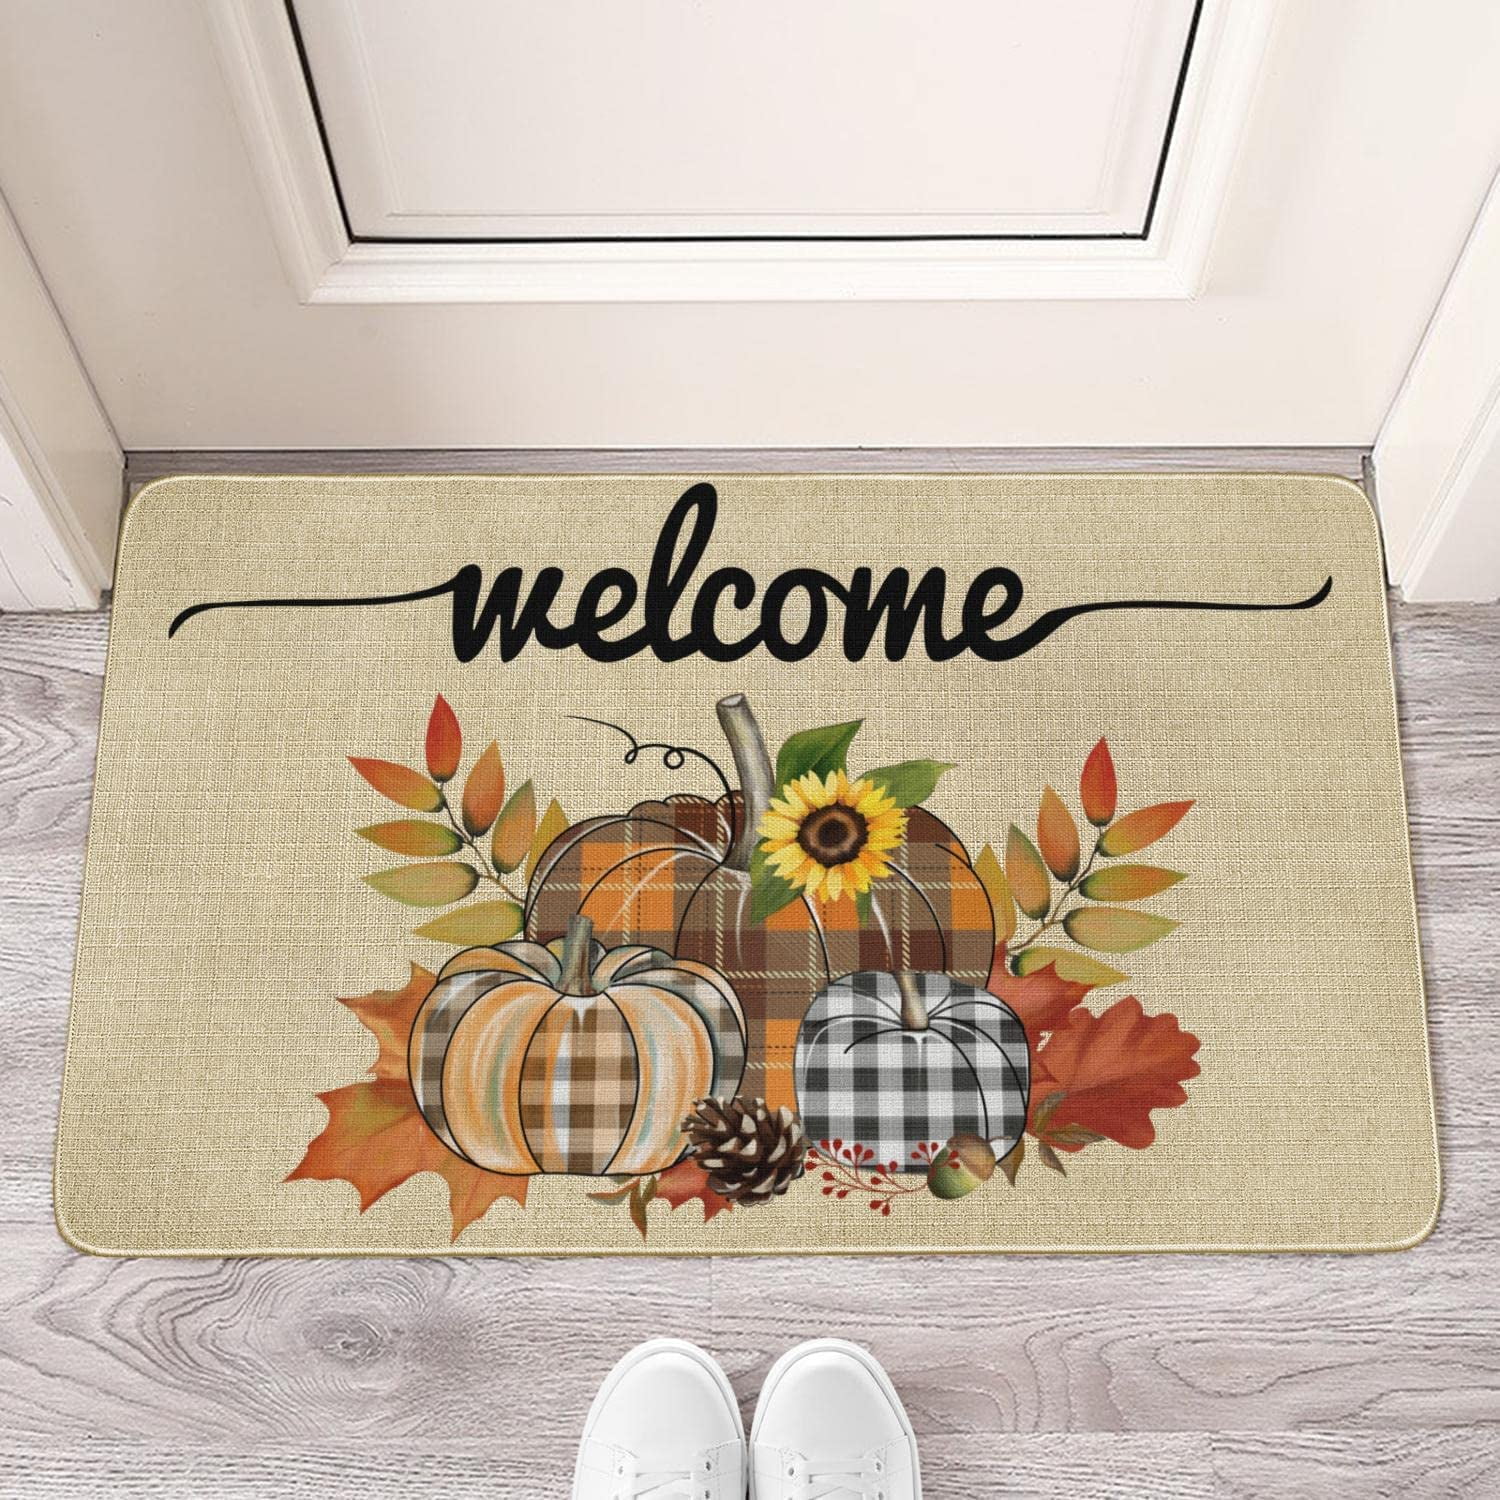 This is How We Roll Welcome Mat, Personalized Doormats, RV Welcome Doormat,  Home Decor, Front Door, Home Doormat, Custom Door Mats, Outdoor